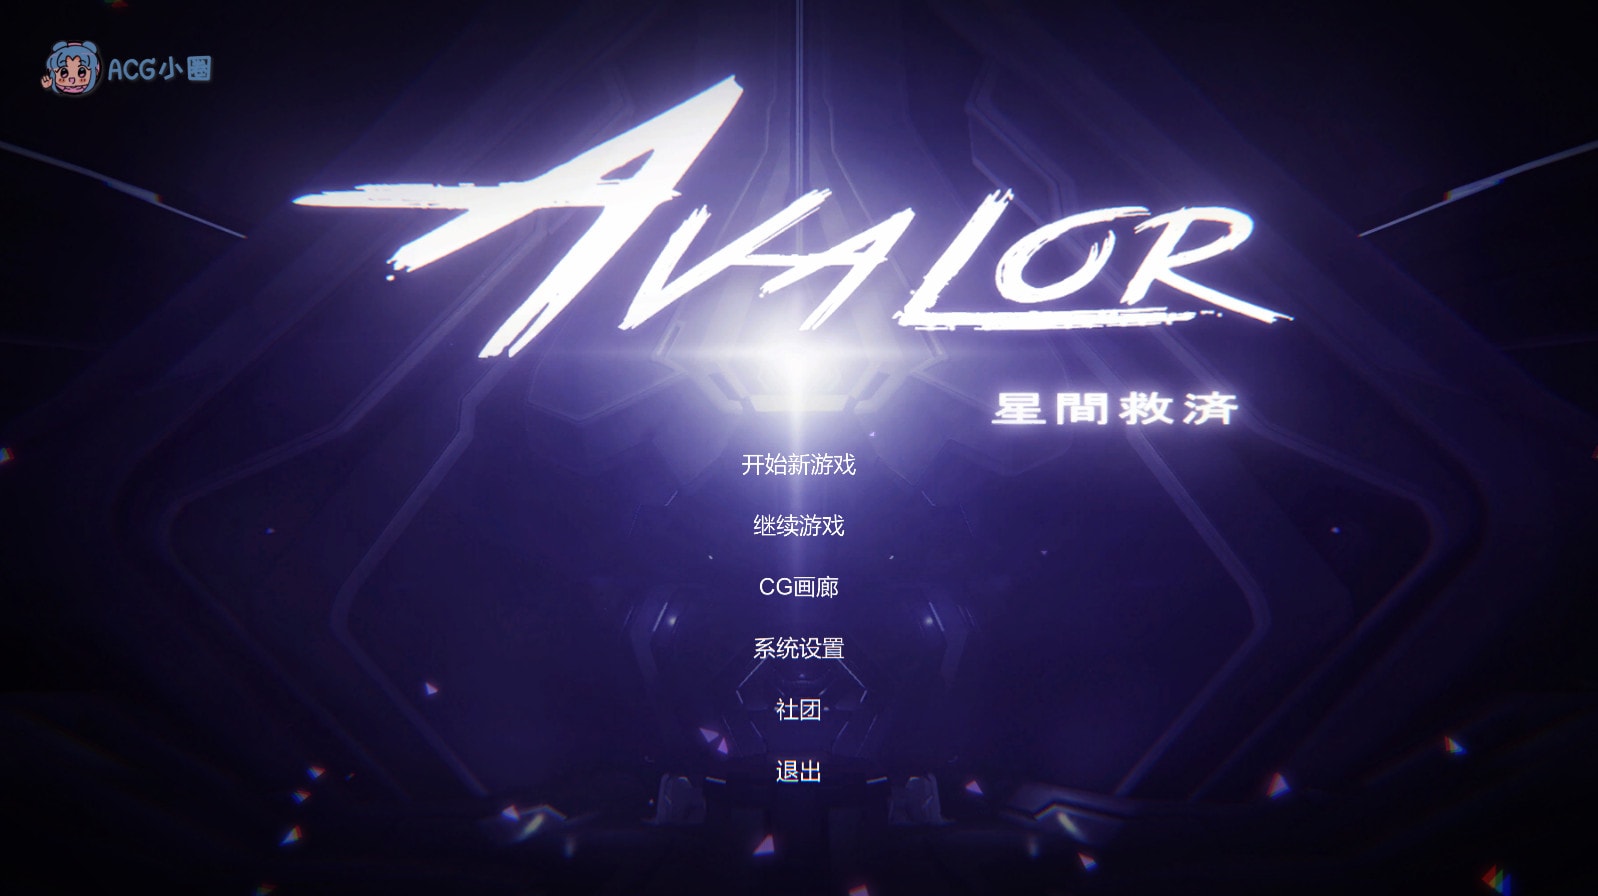 PC【ACT/中文/动态】Avalor-星际救赎 官方中文版[新作]【2.8G】